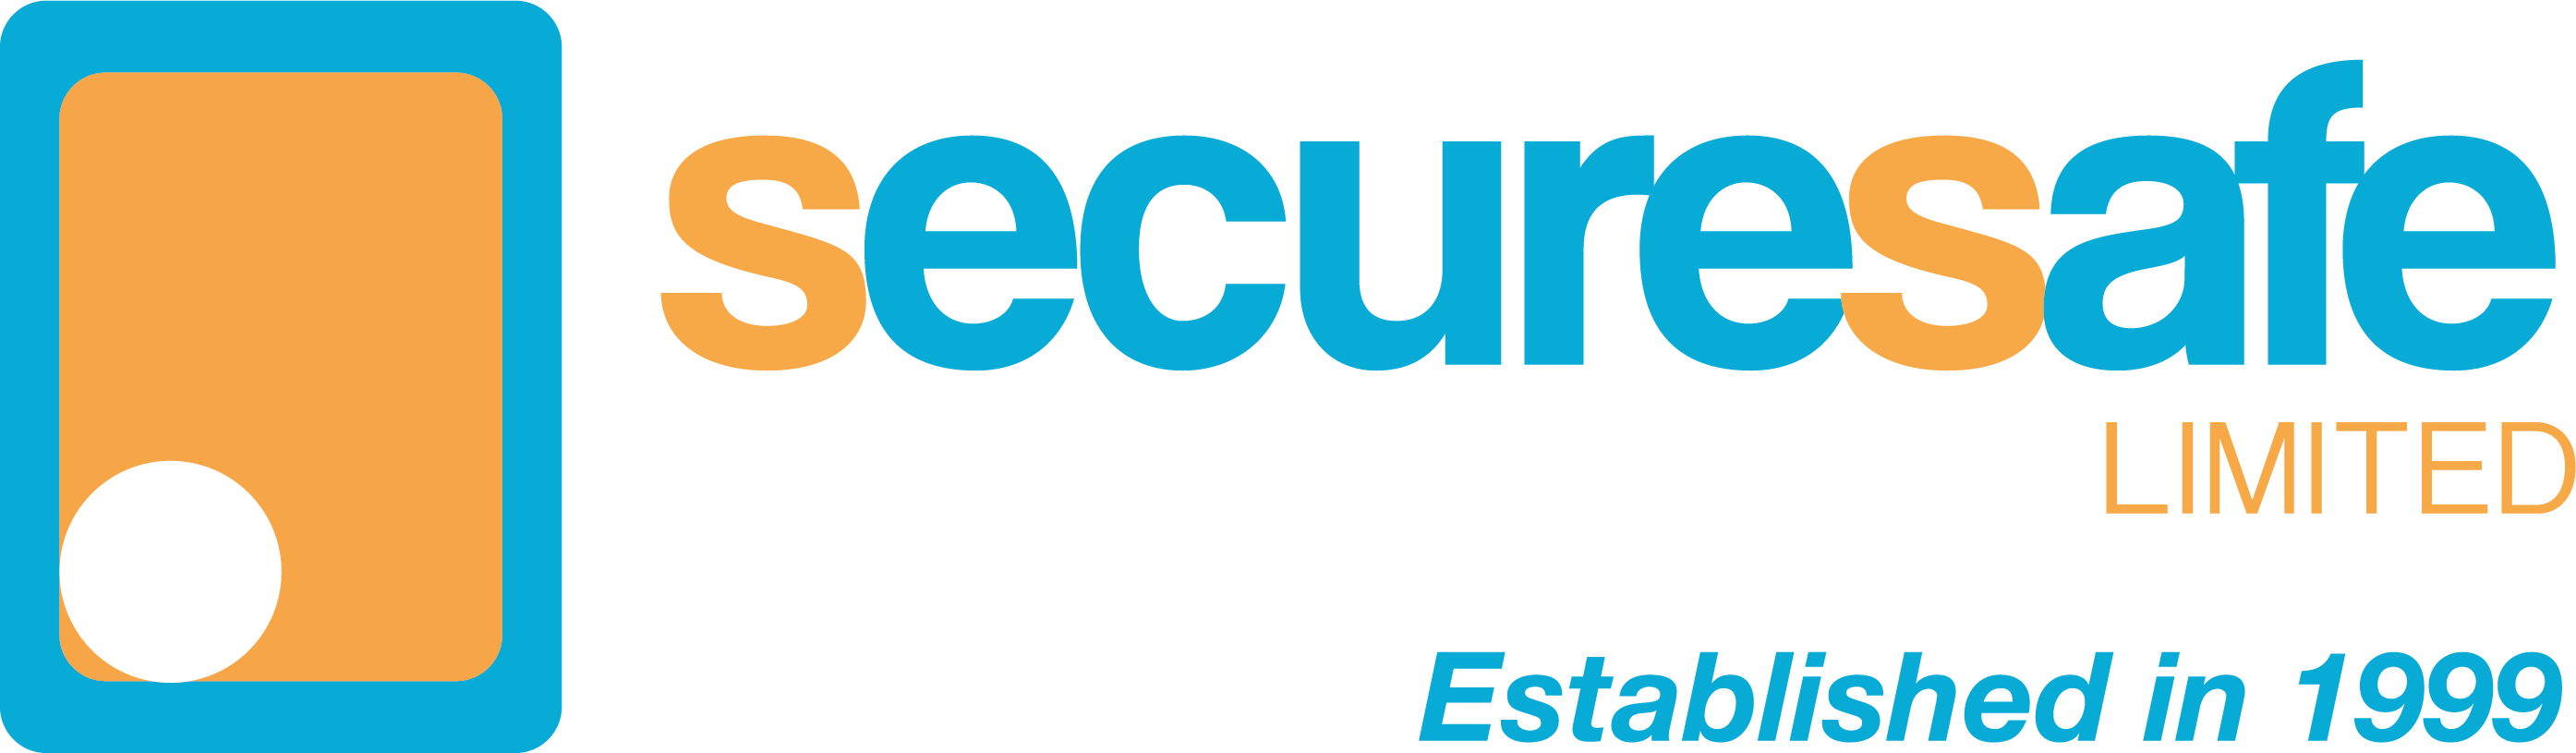 Deposit Safes - Secure Safe